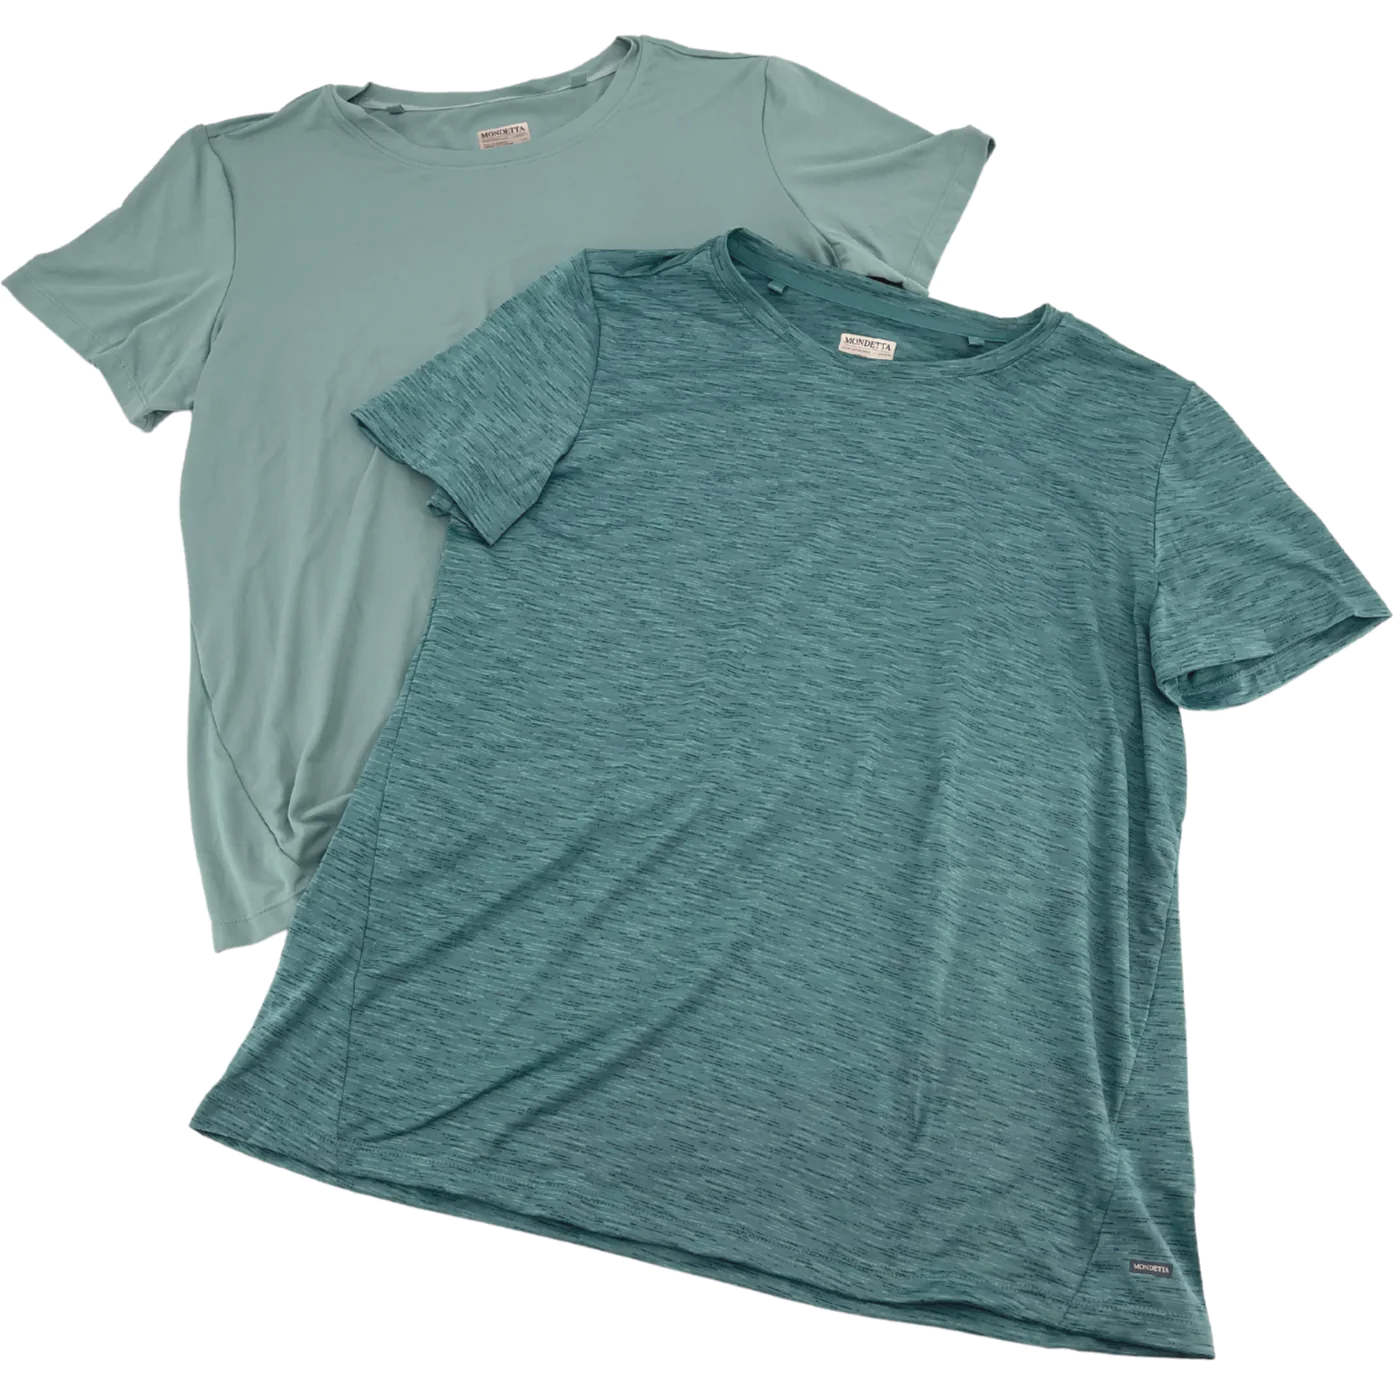 Mondetta Women's 2 Pack of Green T-Shirt / Various Sizes